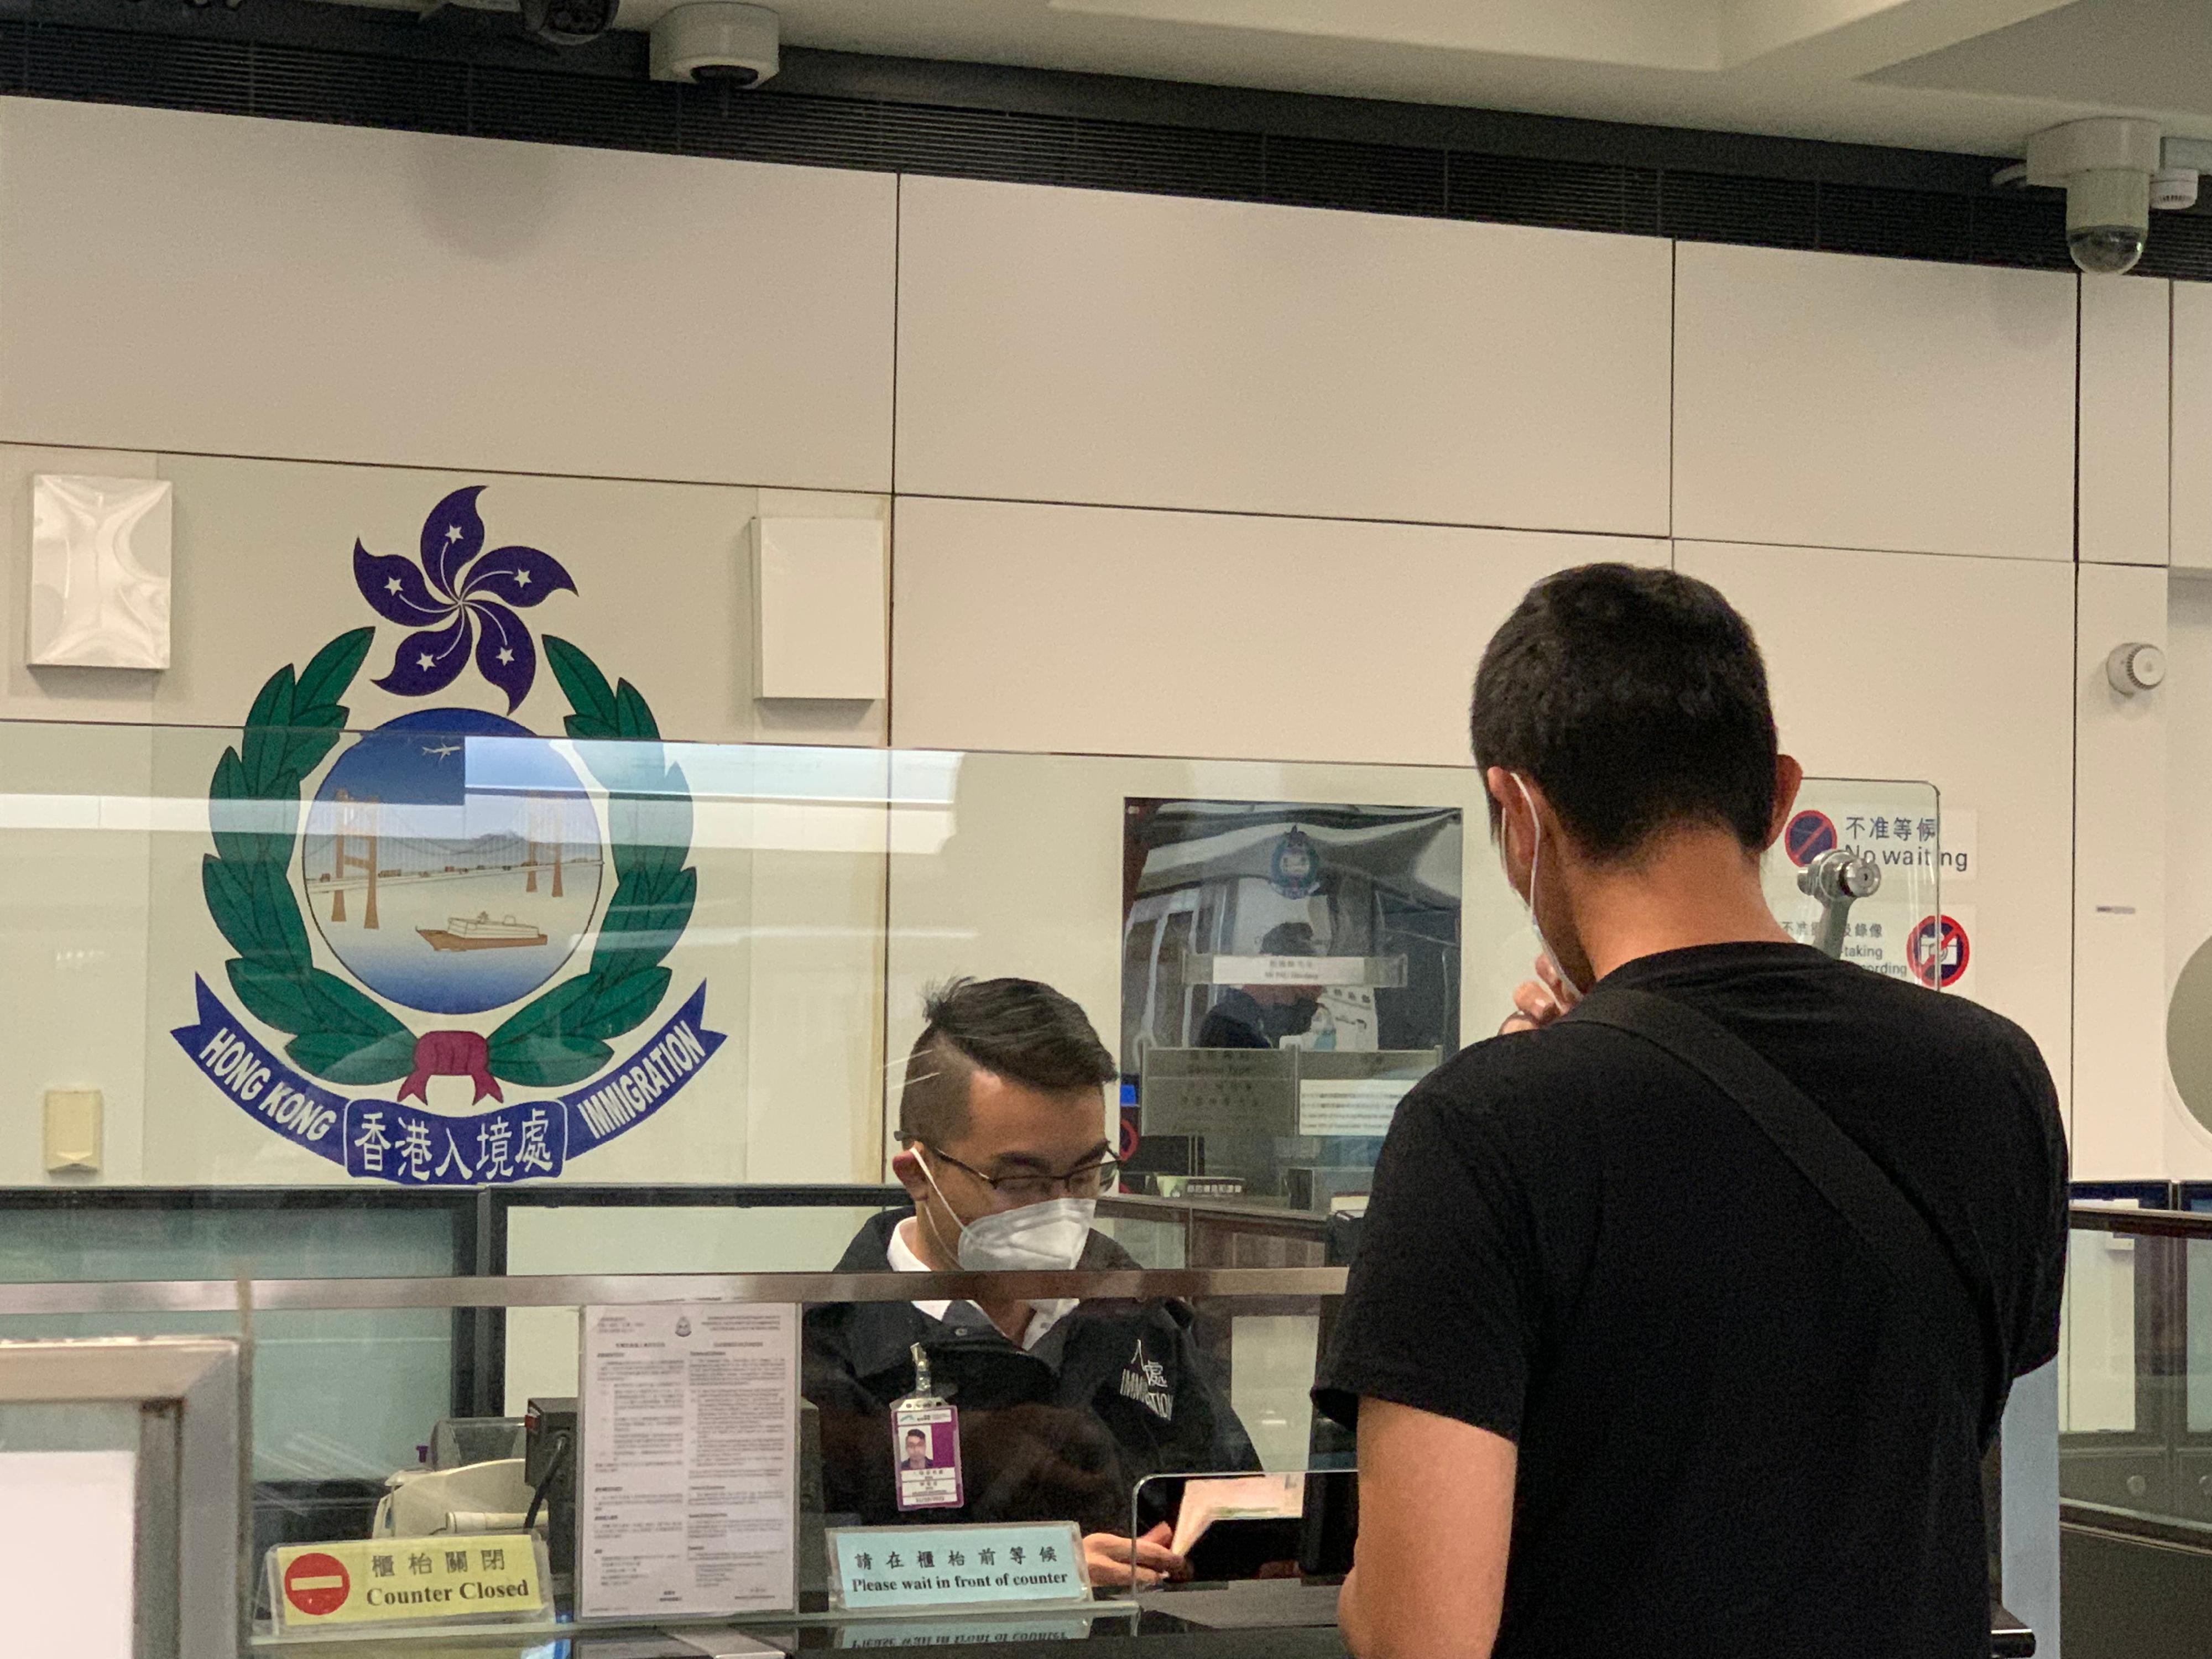 今日（八月二十五日）三名求助港人安全抵达香港国际机场，图示入境处人员在专用柜台协助有关求助港人办理出入境手续。
